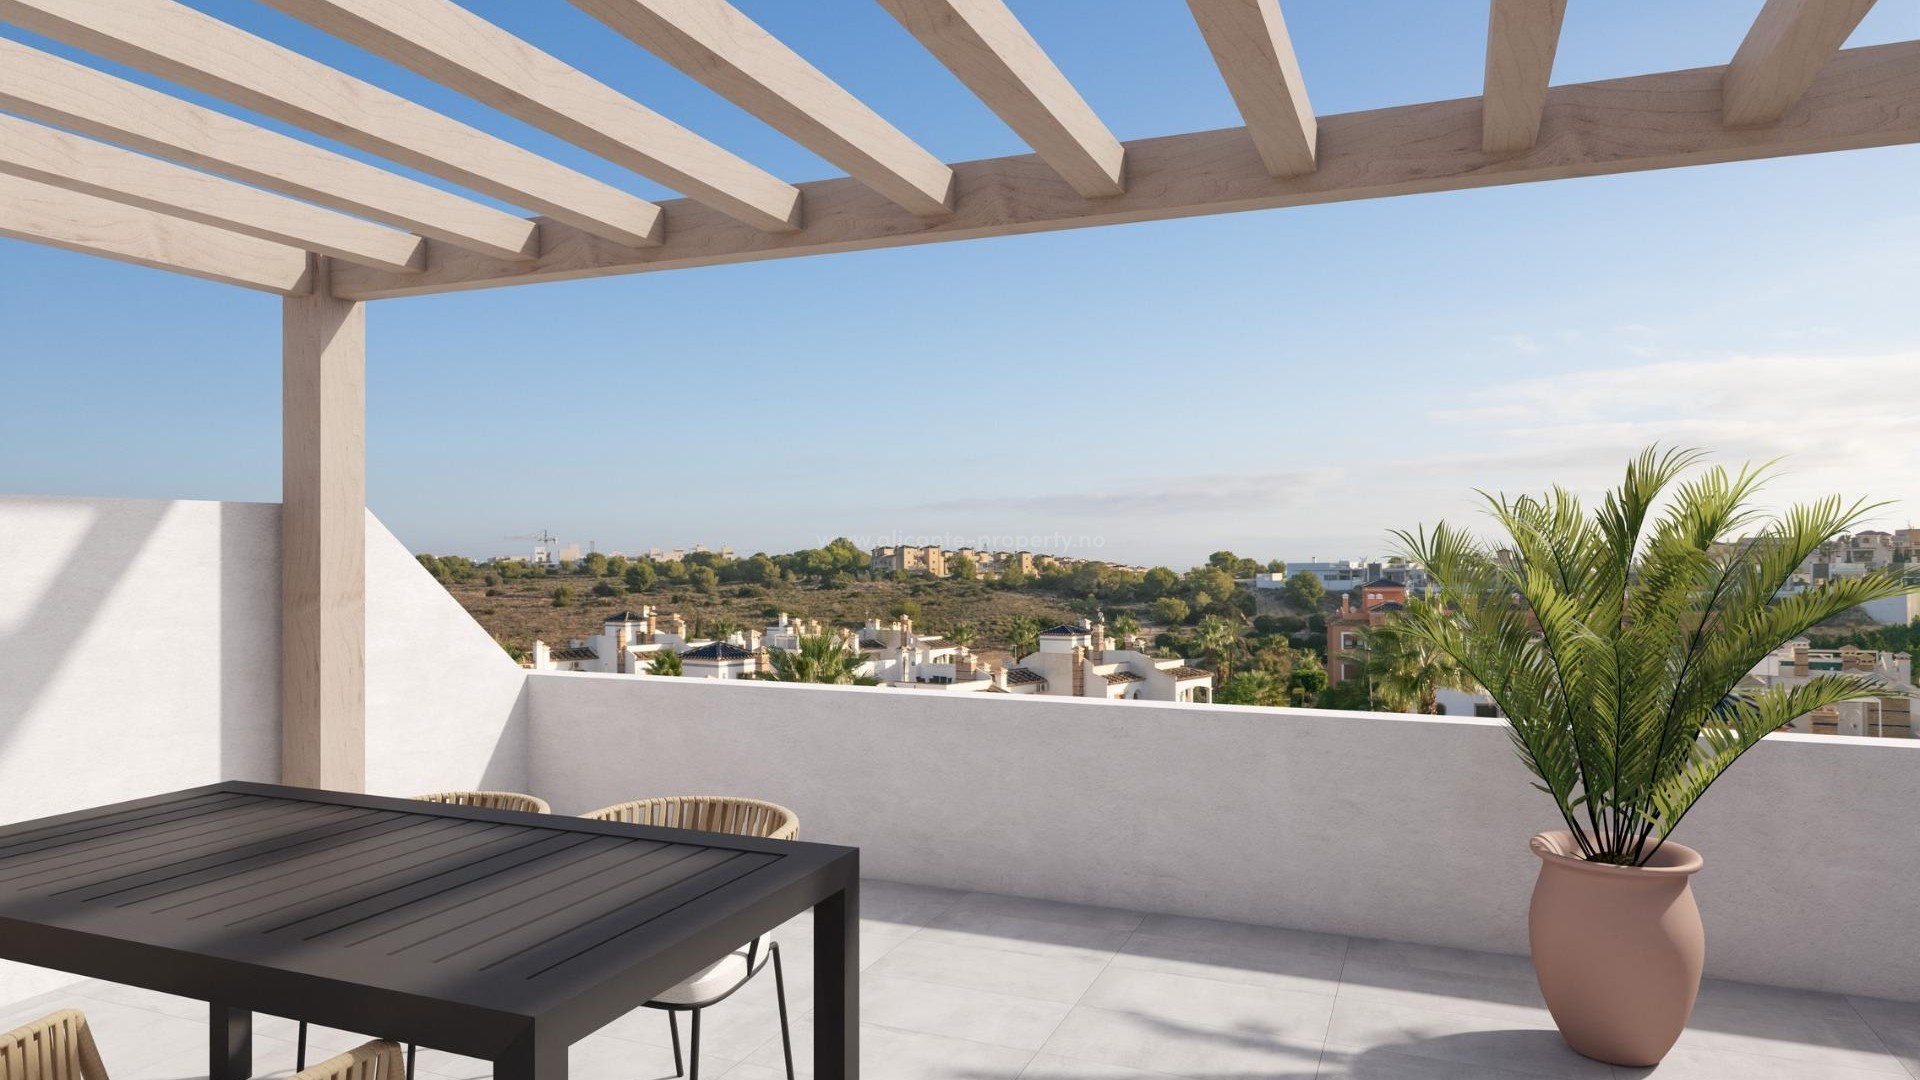 Nytt boligkompleks i Orihuela Costa, 2 soverom, 2 bad, terrasser, toppleiligheter med solterrasser med fantastisk utsikt